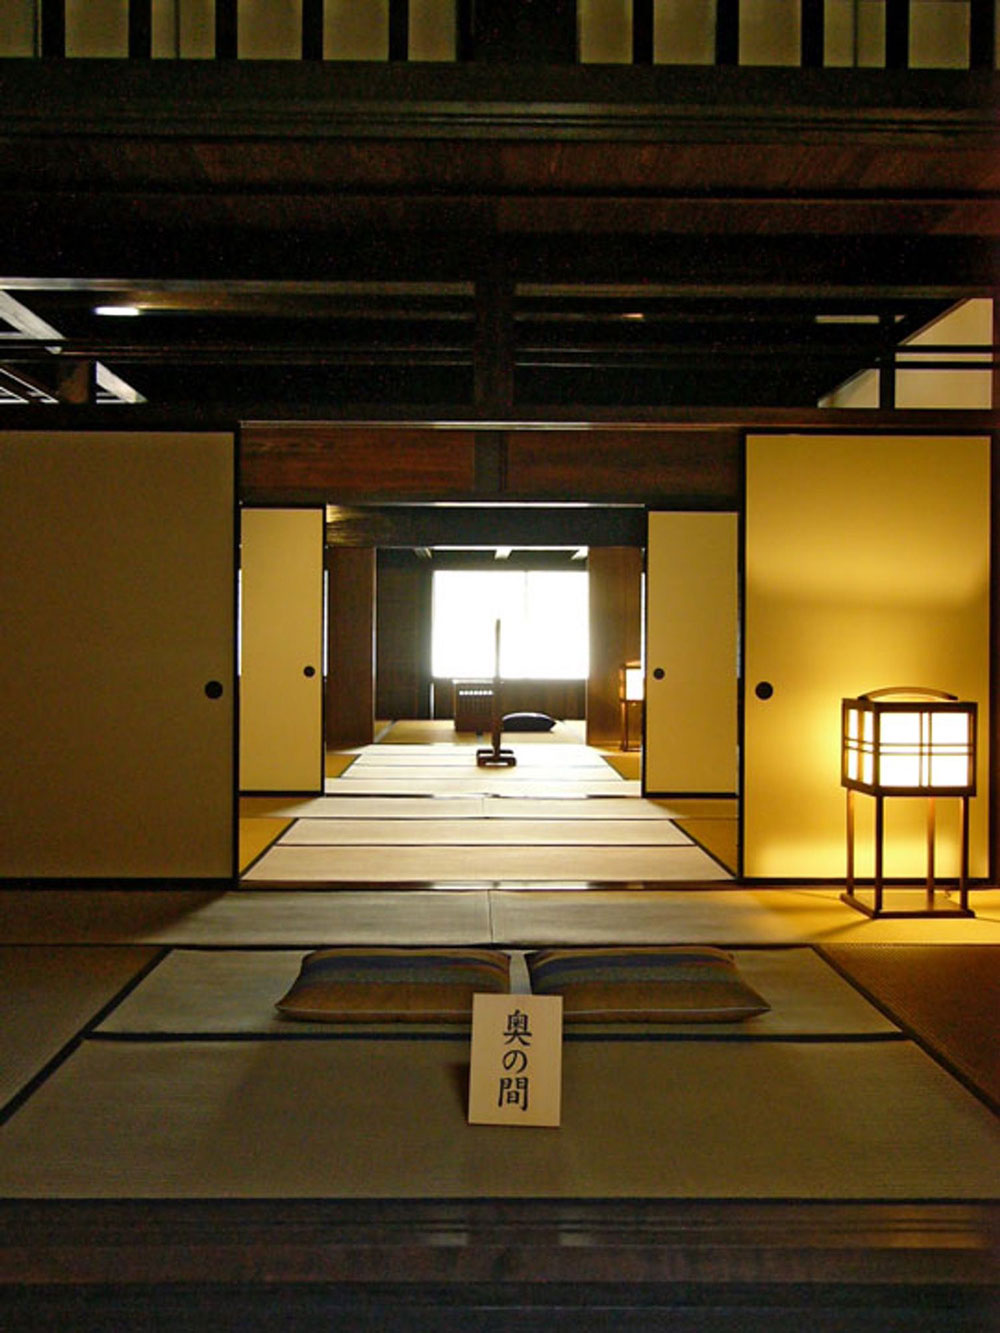 Ánh sáng tự nhiên được tận dụng tối đa trong nhà ở Nhật Bản